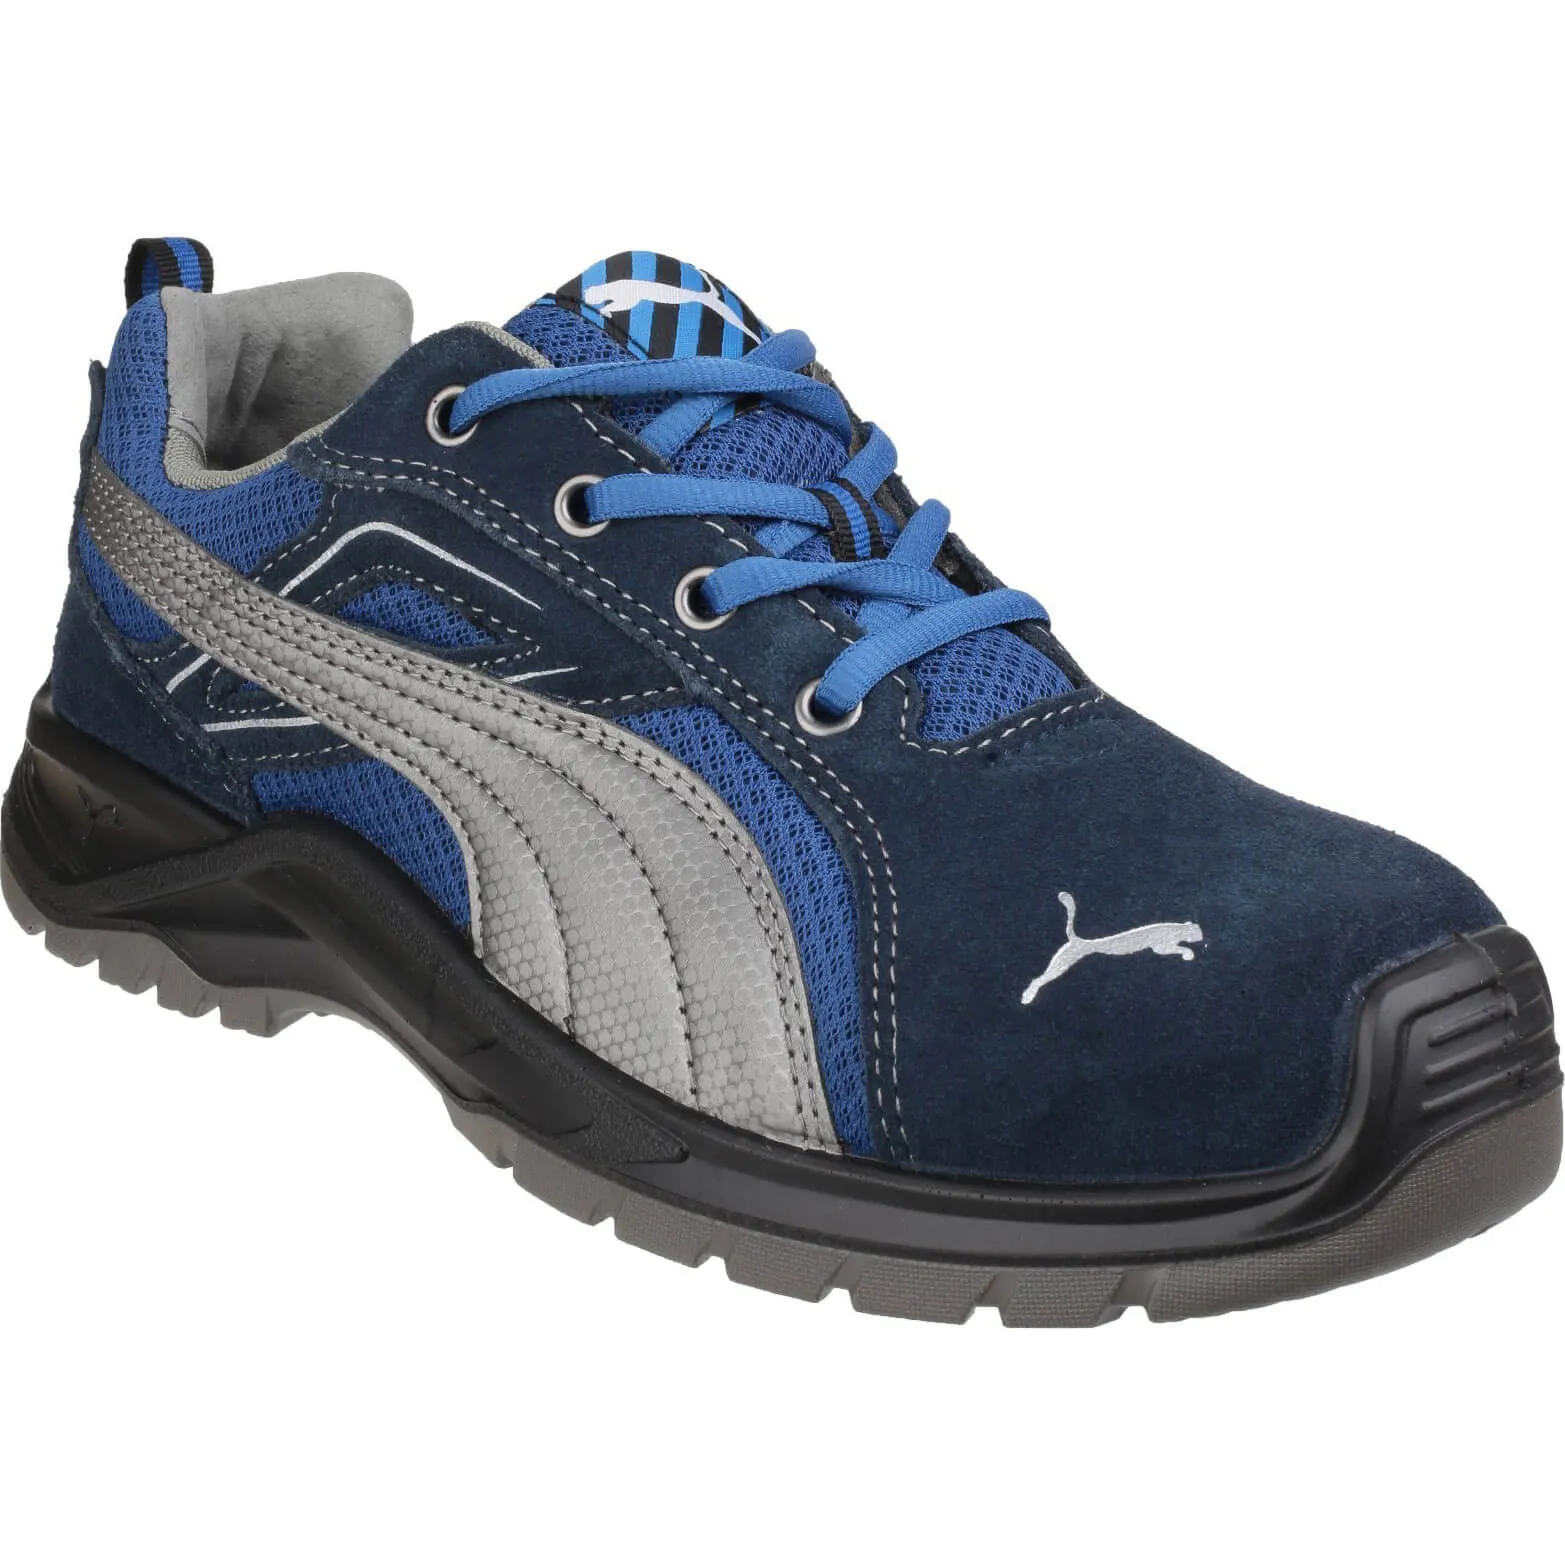 Puma Safety Omni Sky Low Safety Shoe - Blue, Size 10.5